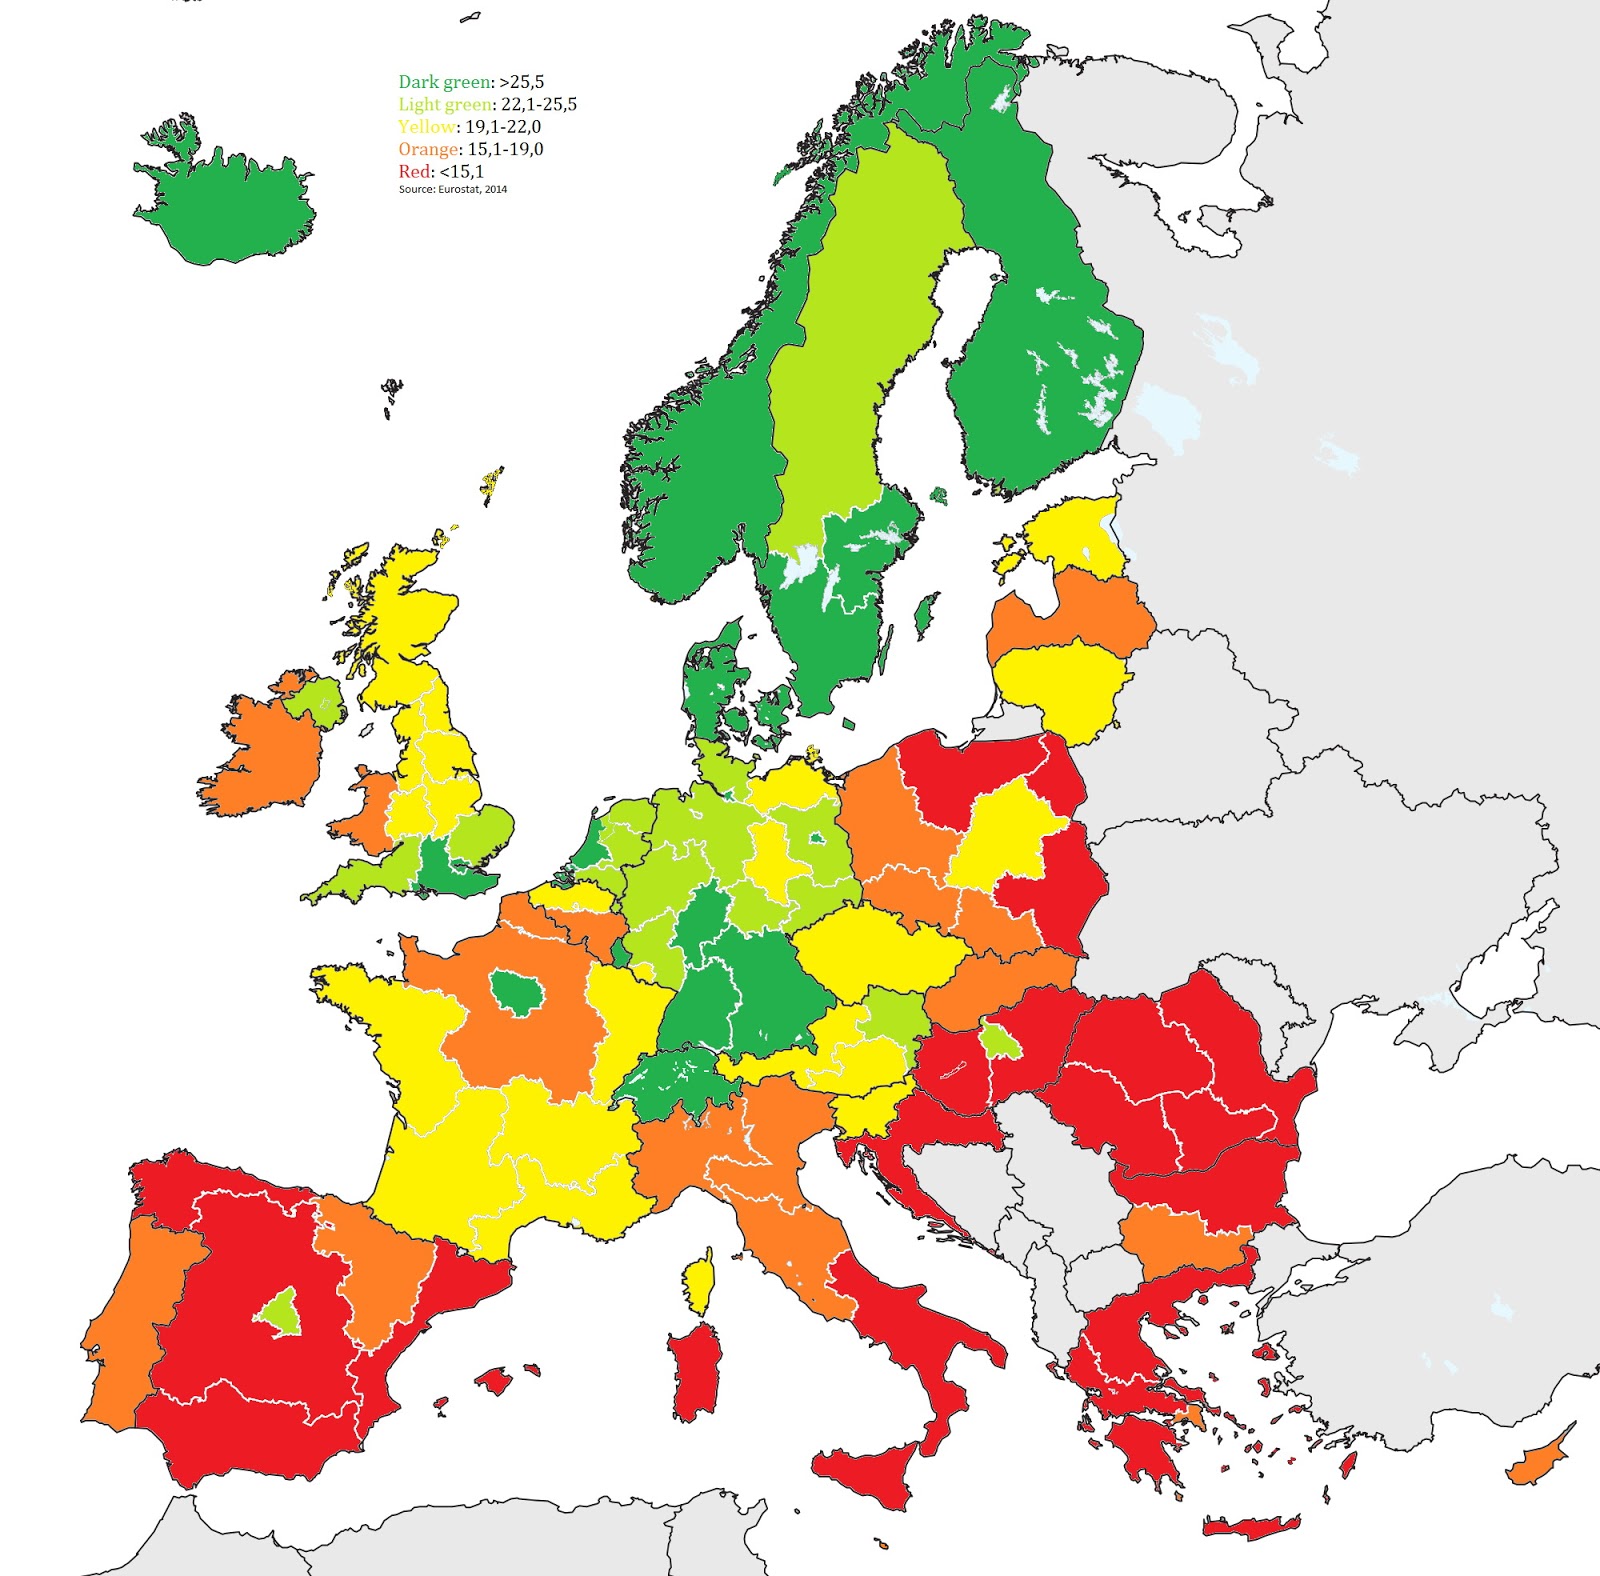 assunti in scienza e tecnologia, mappa dell'Europa